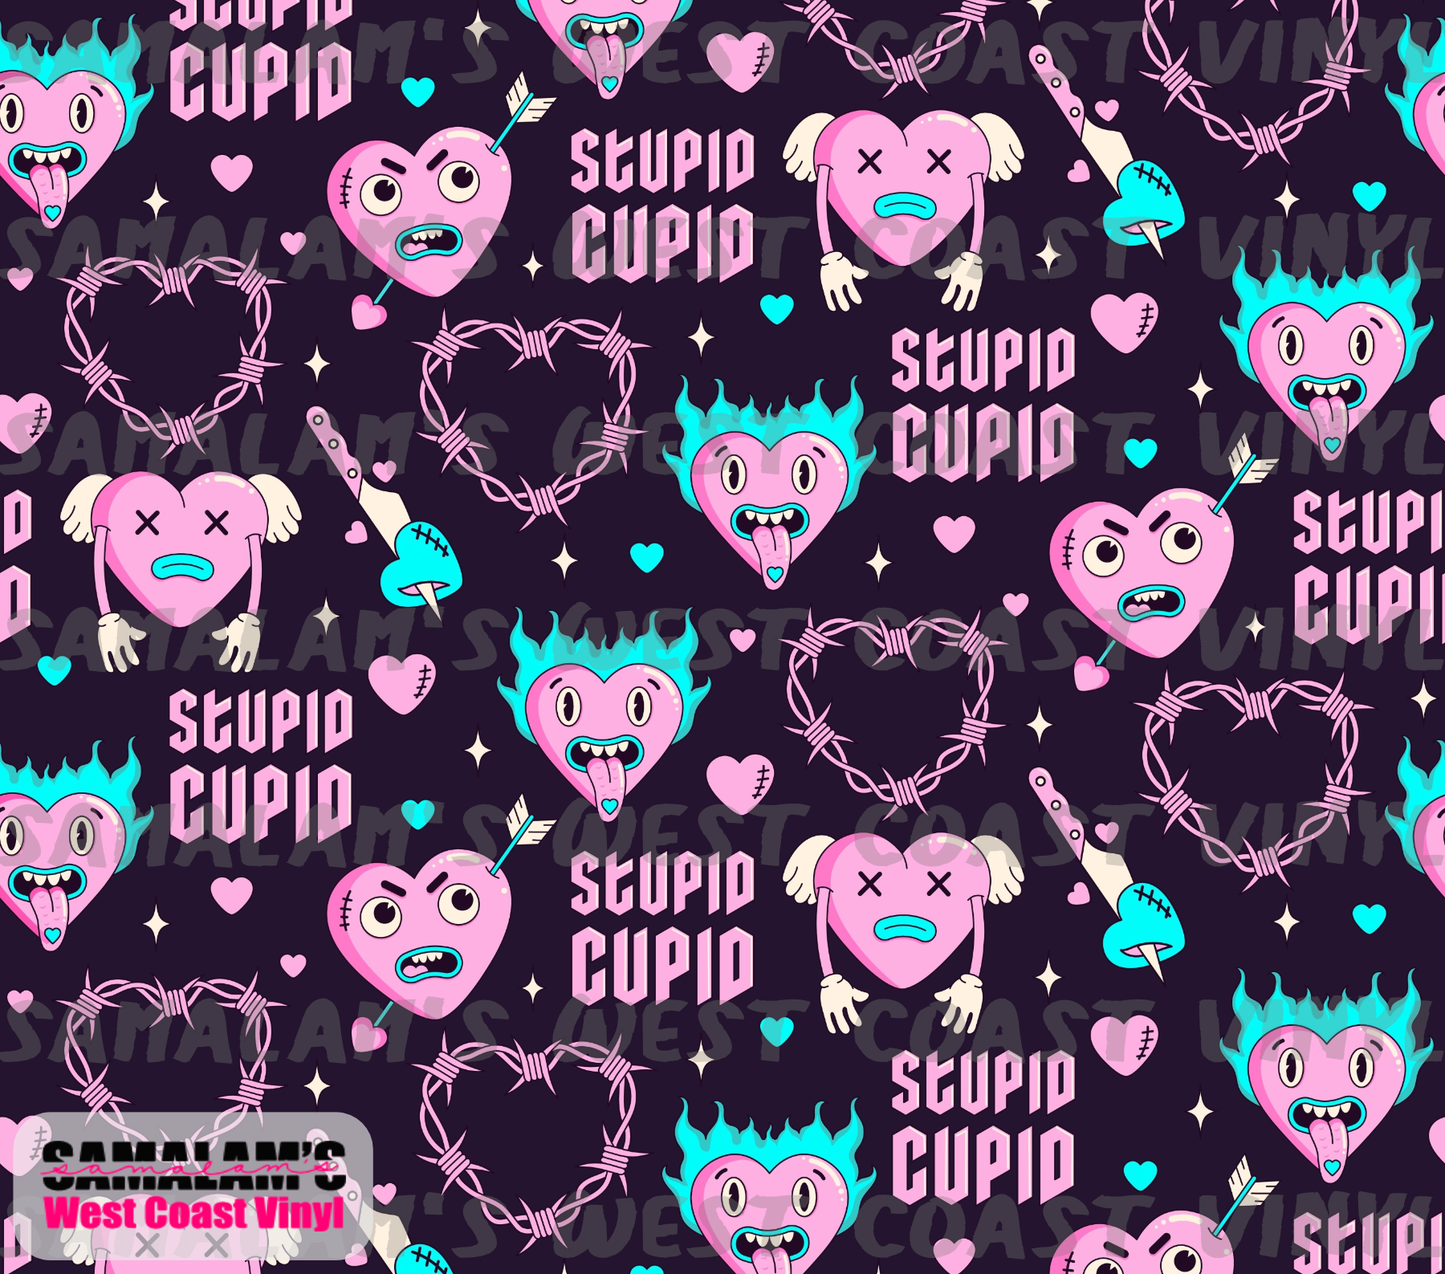 Stupid Cupid - Tumbler Wrap